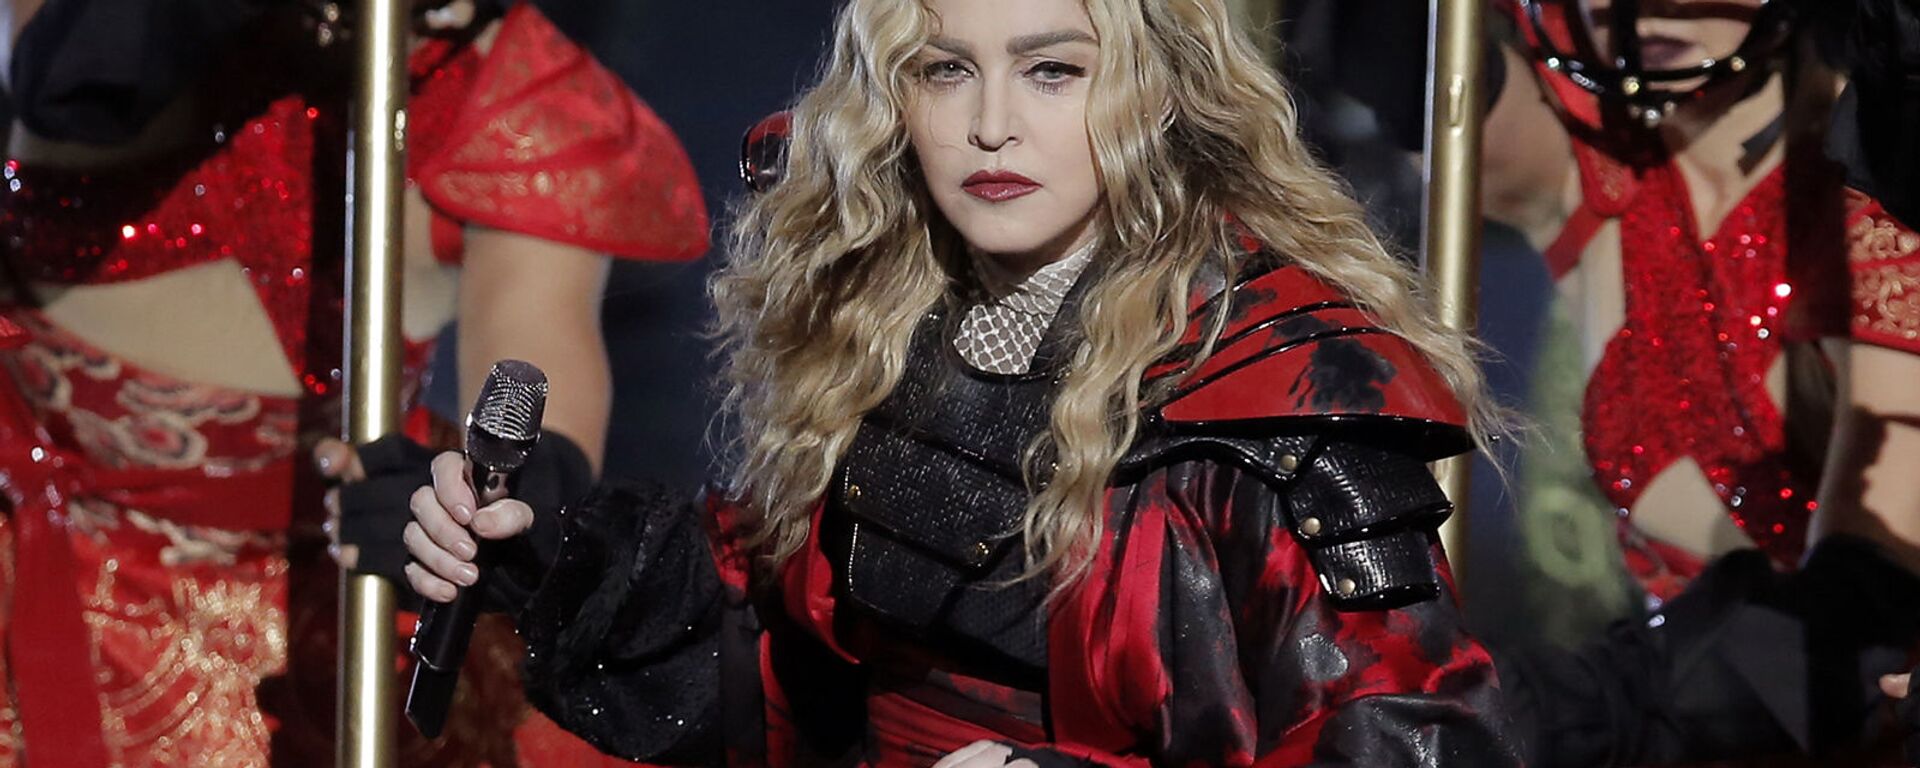 Певица Мадонна выступает во время мирового турне Rebel Heart в Макао  - Sputnik Արմենիա, 1920, 09.08.2021